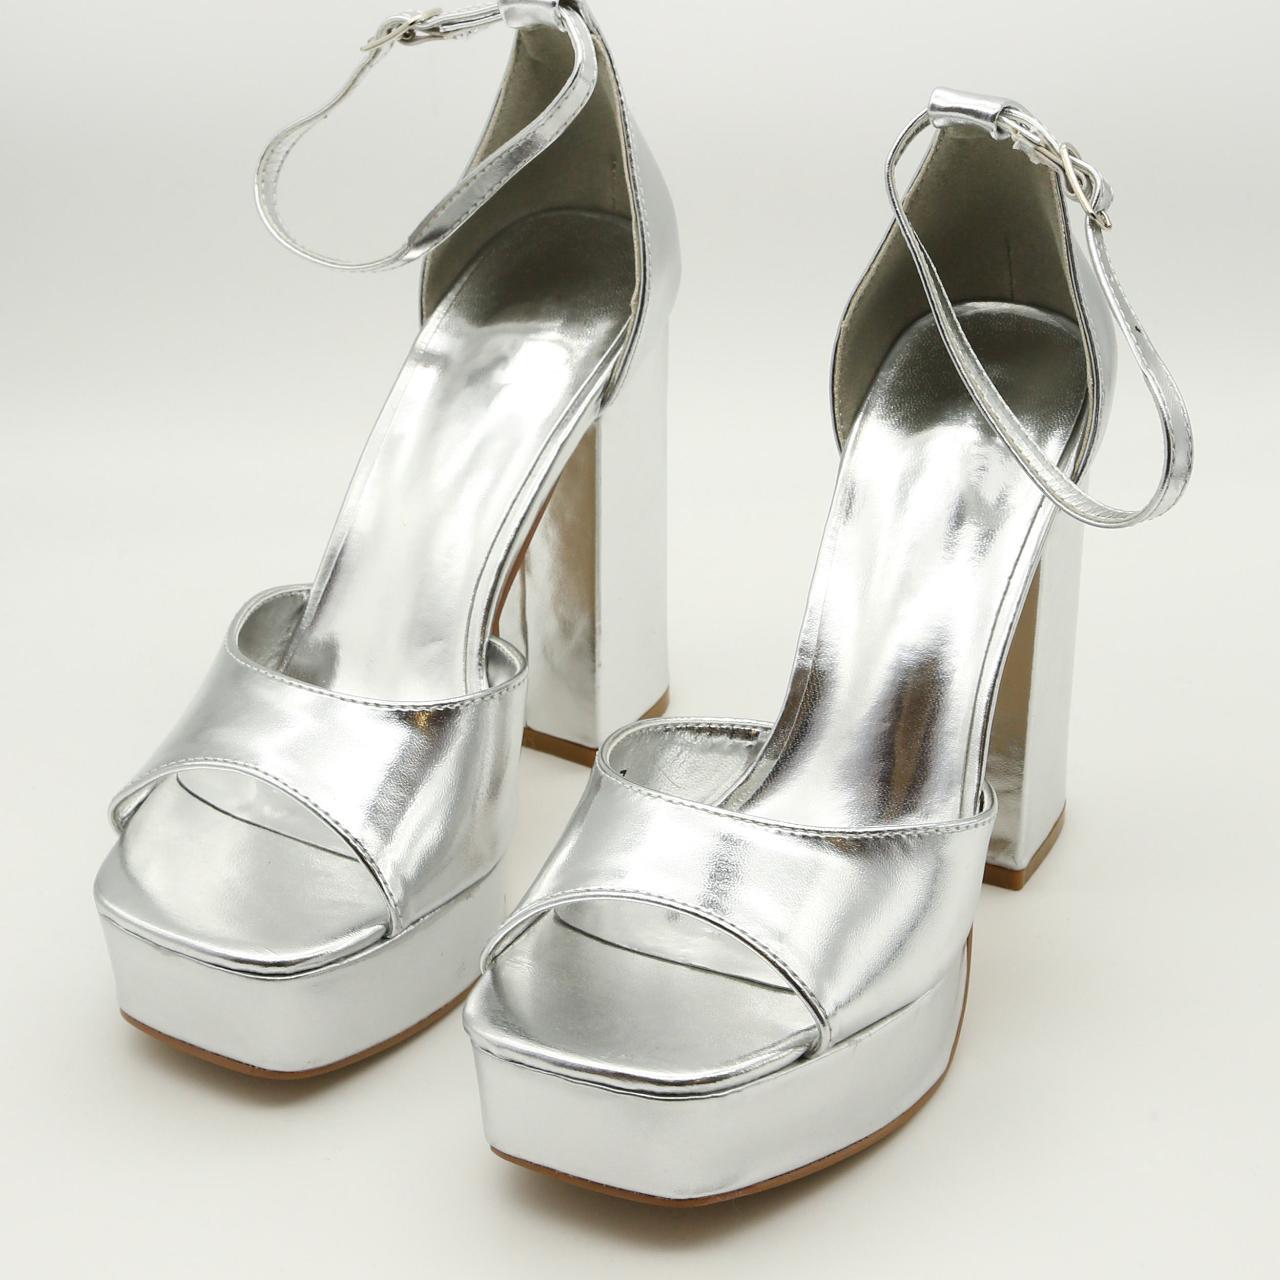 Women's Silver Metallic Platform Heel Sandals Size 2... - Depop